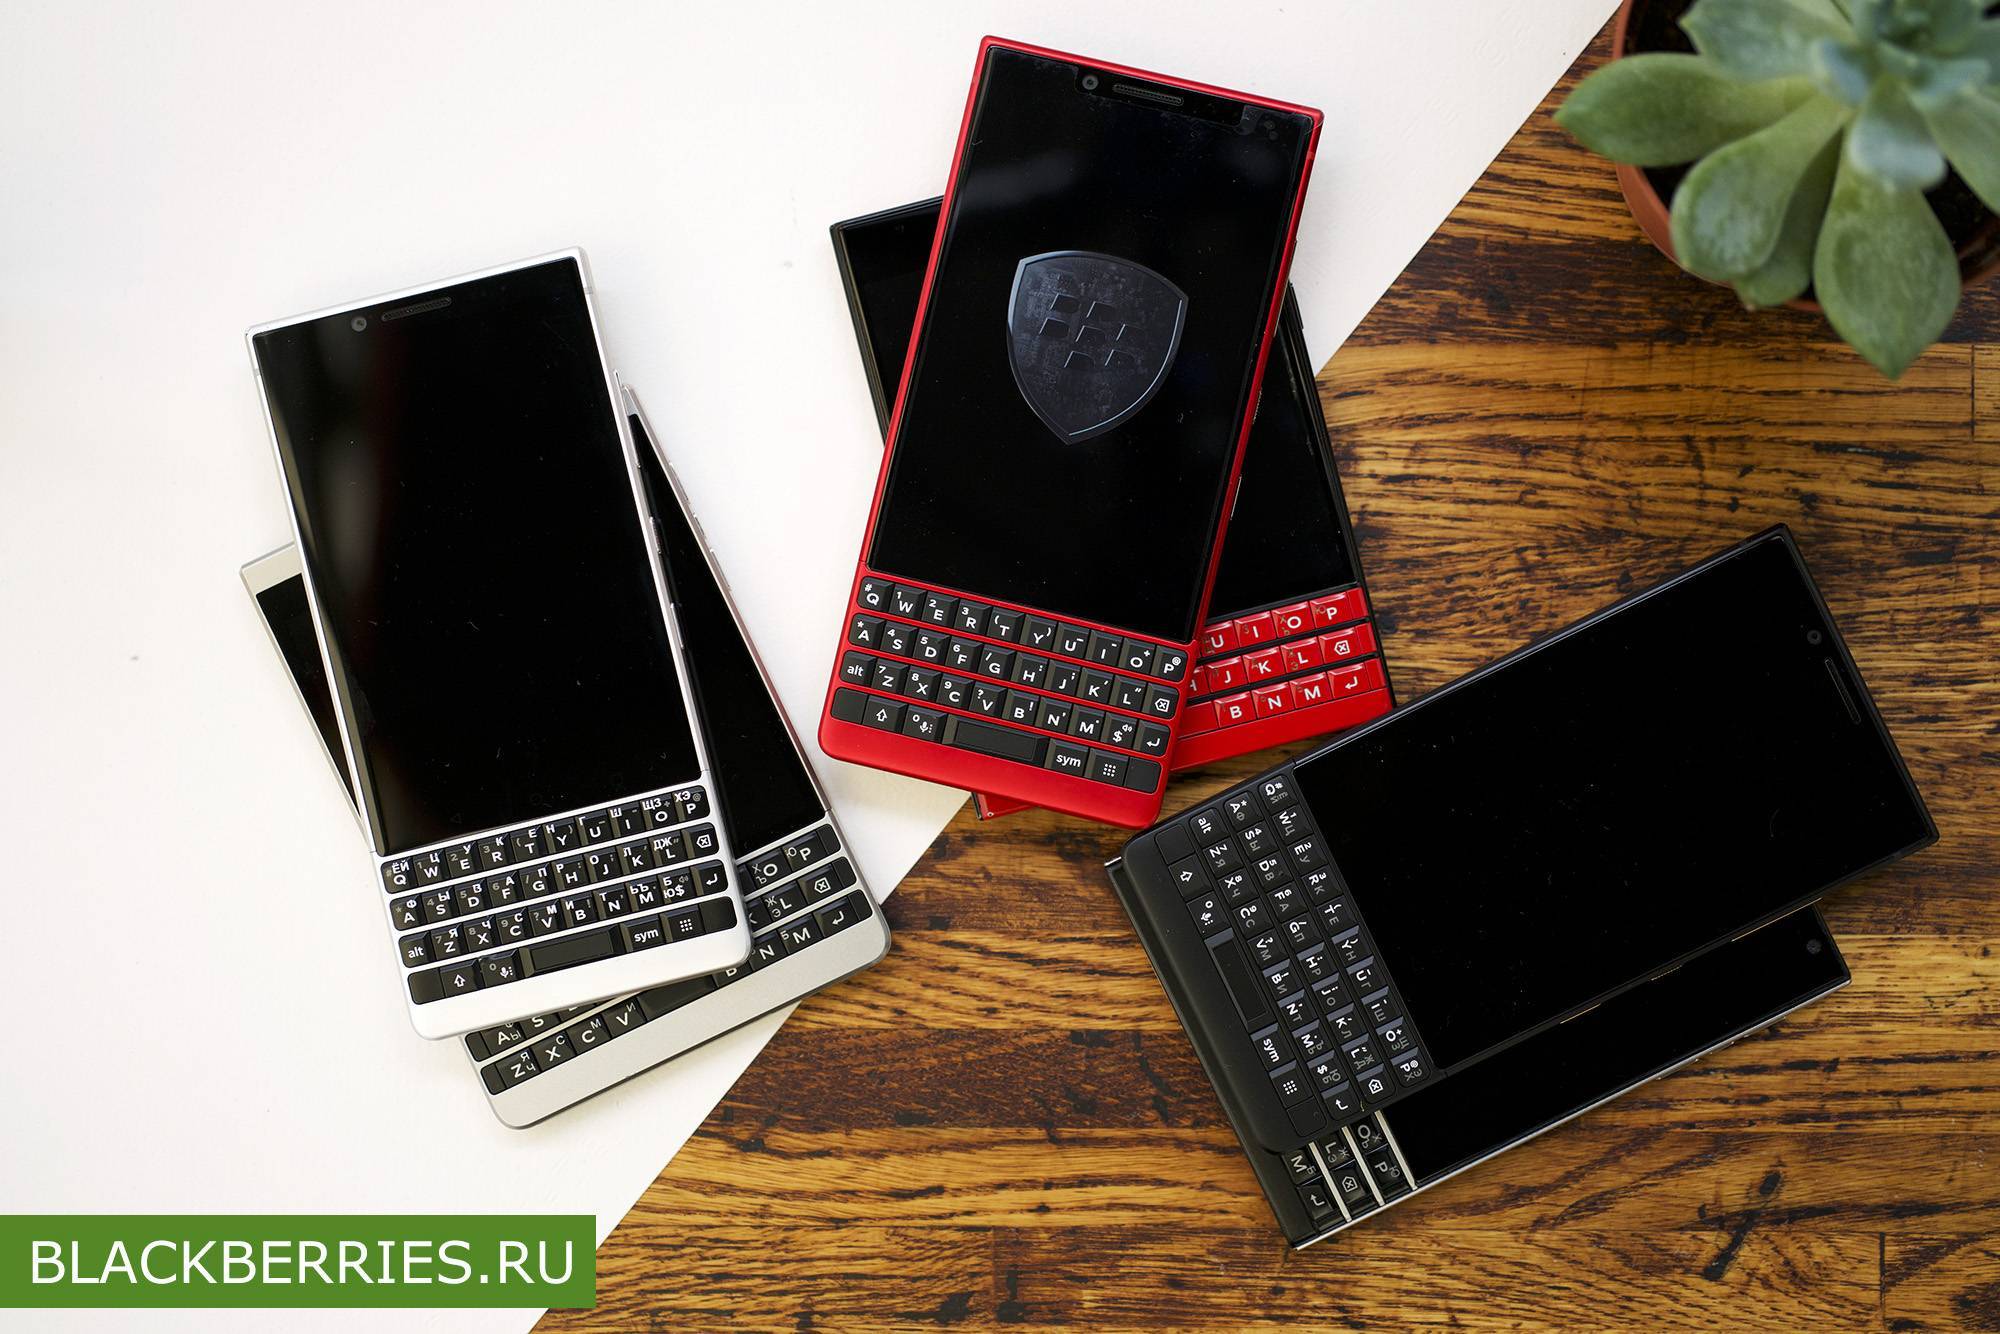 Новая статья: обзор смартфона blackberry key2: редкий экземпляр